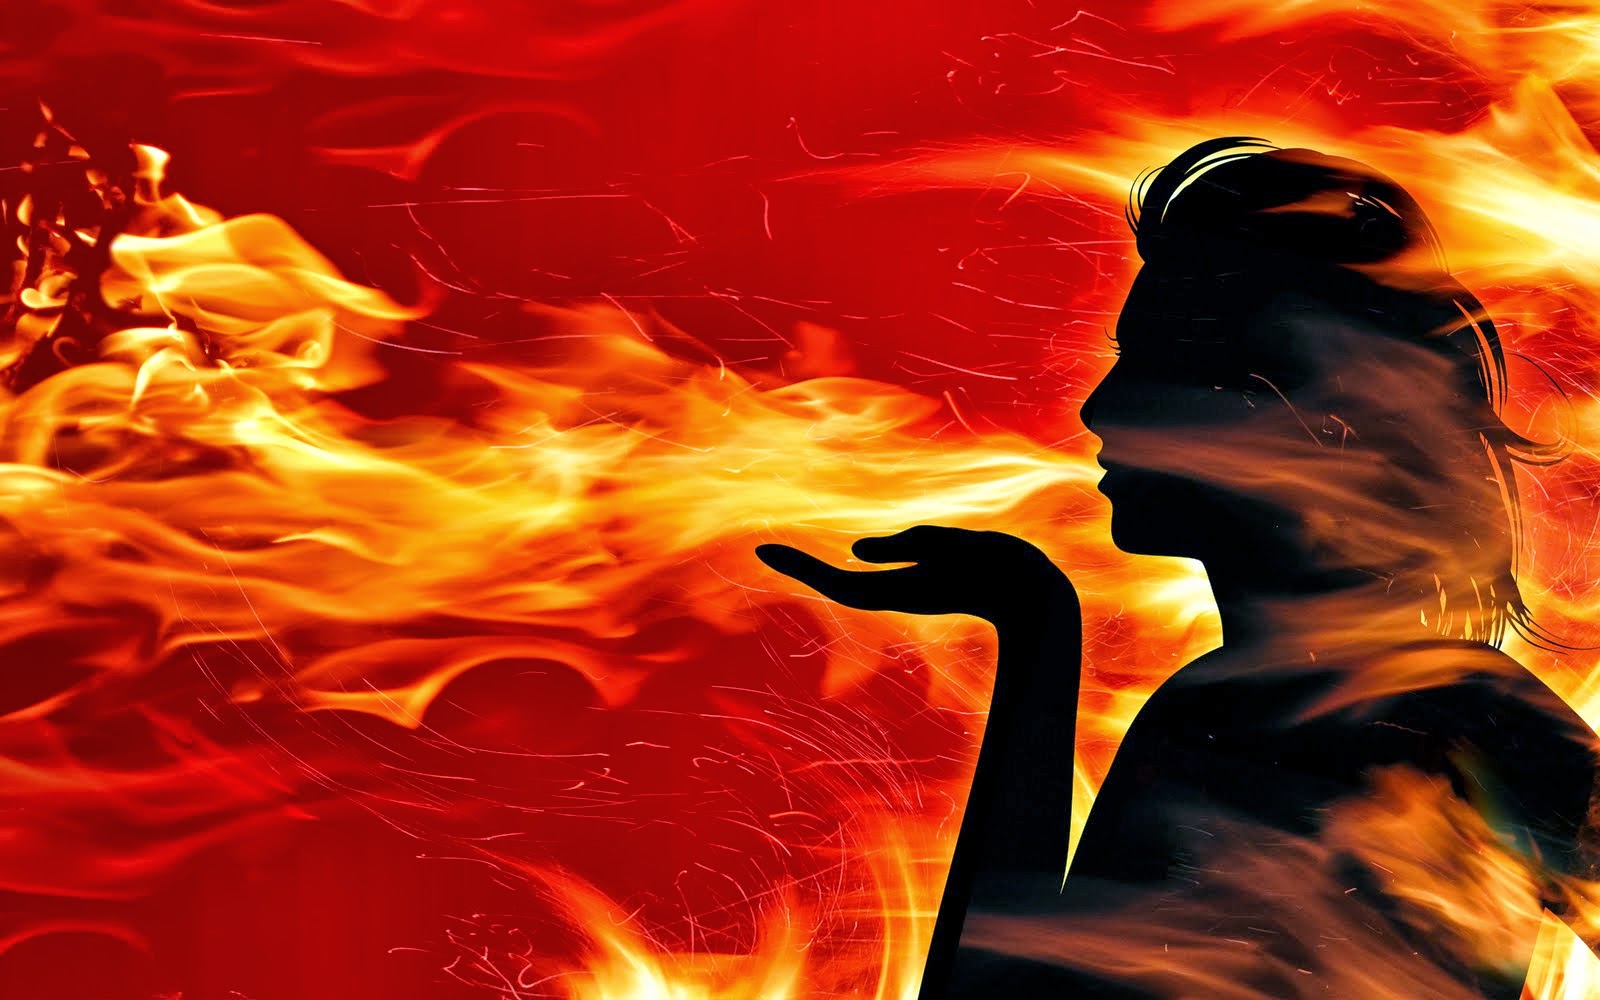 llama fondo de pantalla hd,fuego,calor,fuego,cg artwork,personaje de ficción